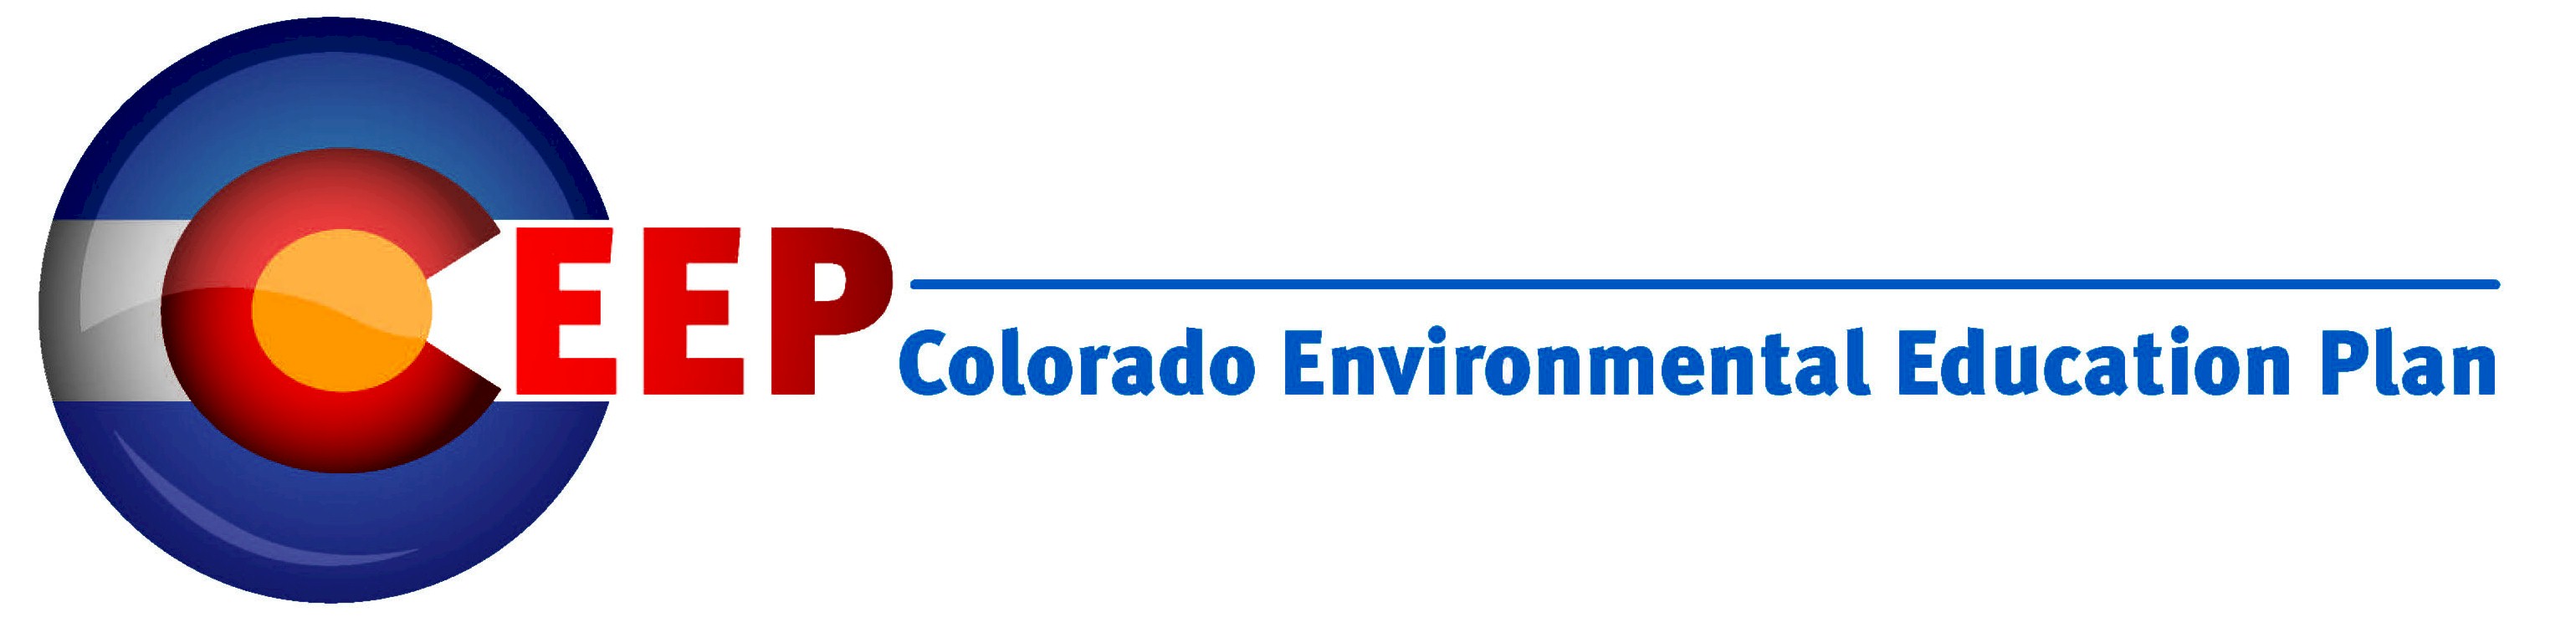 Colorado Environmental Education Plan logo